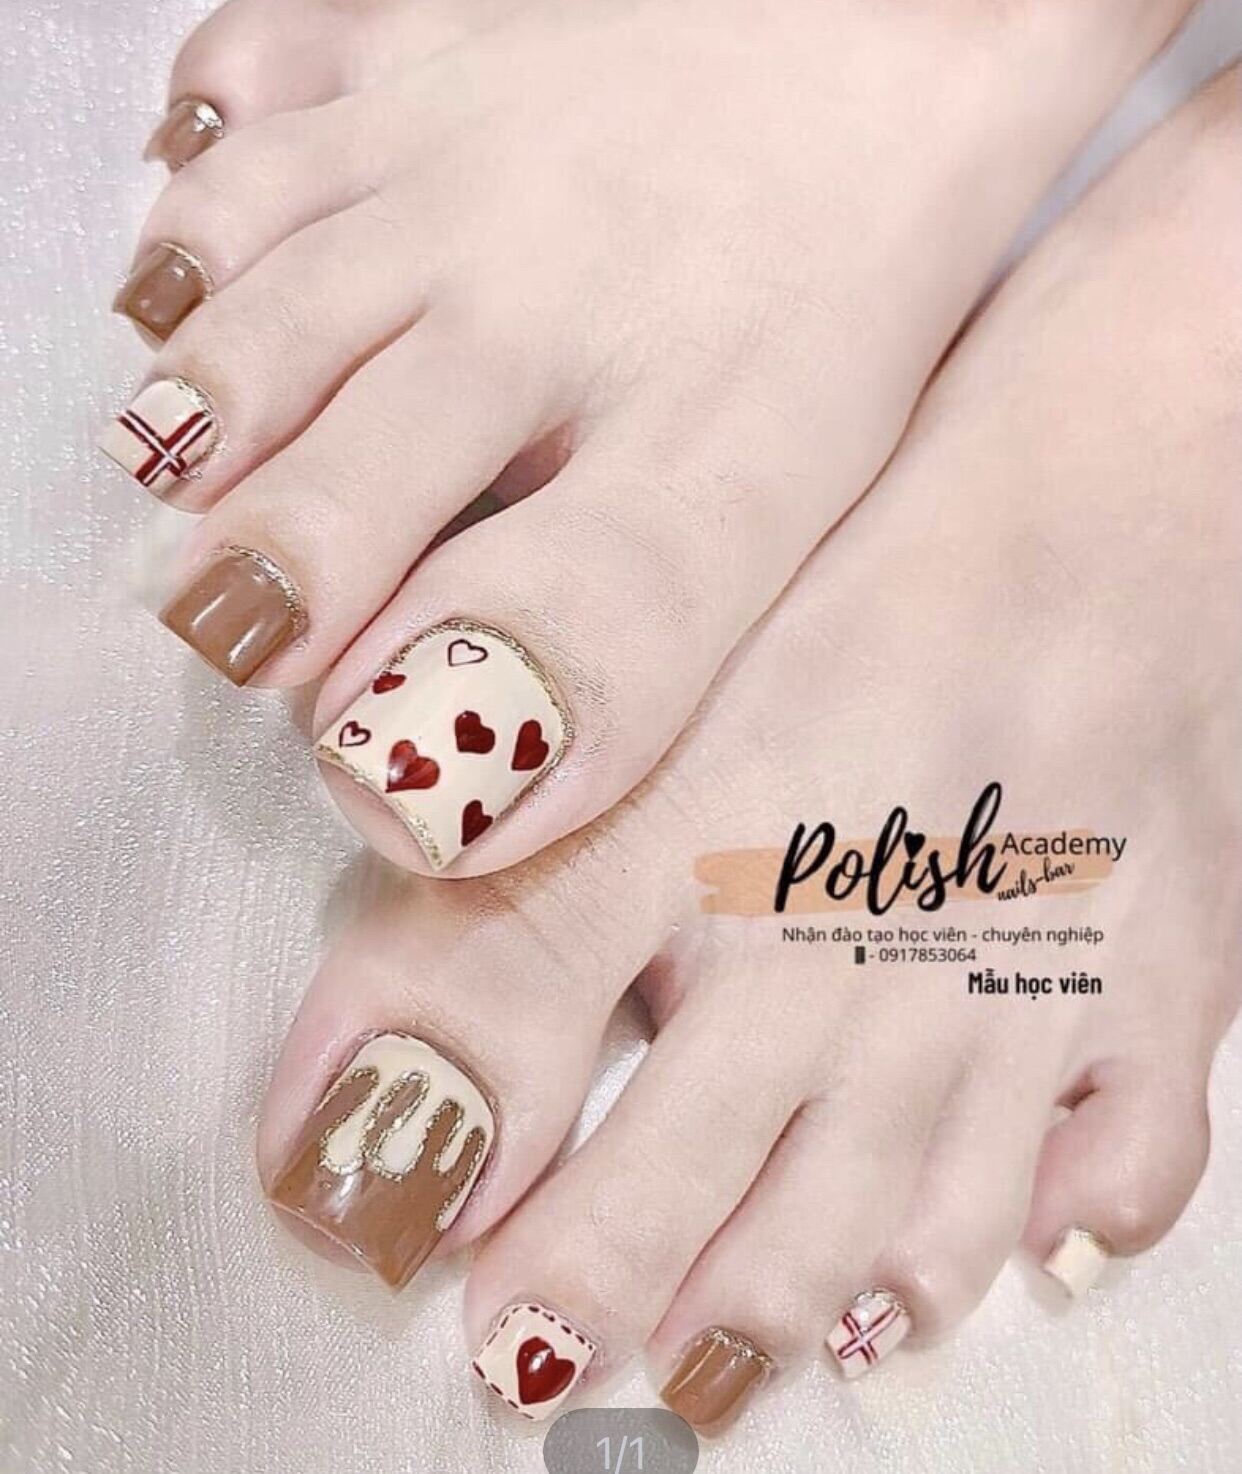 Mẫu nail chân với màu nâu choco siêu tôn da , mix hoạ tiết chú gấu 🐻 cute  lắm ạ 🐻🐻 𝐃𝐞𝐬𝐢𝐠𝐧 𝐍𝐚𝐢𝐥𝐬 by Soda House ✔️Các nàng đừng quên… |  Instagram